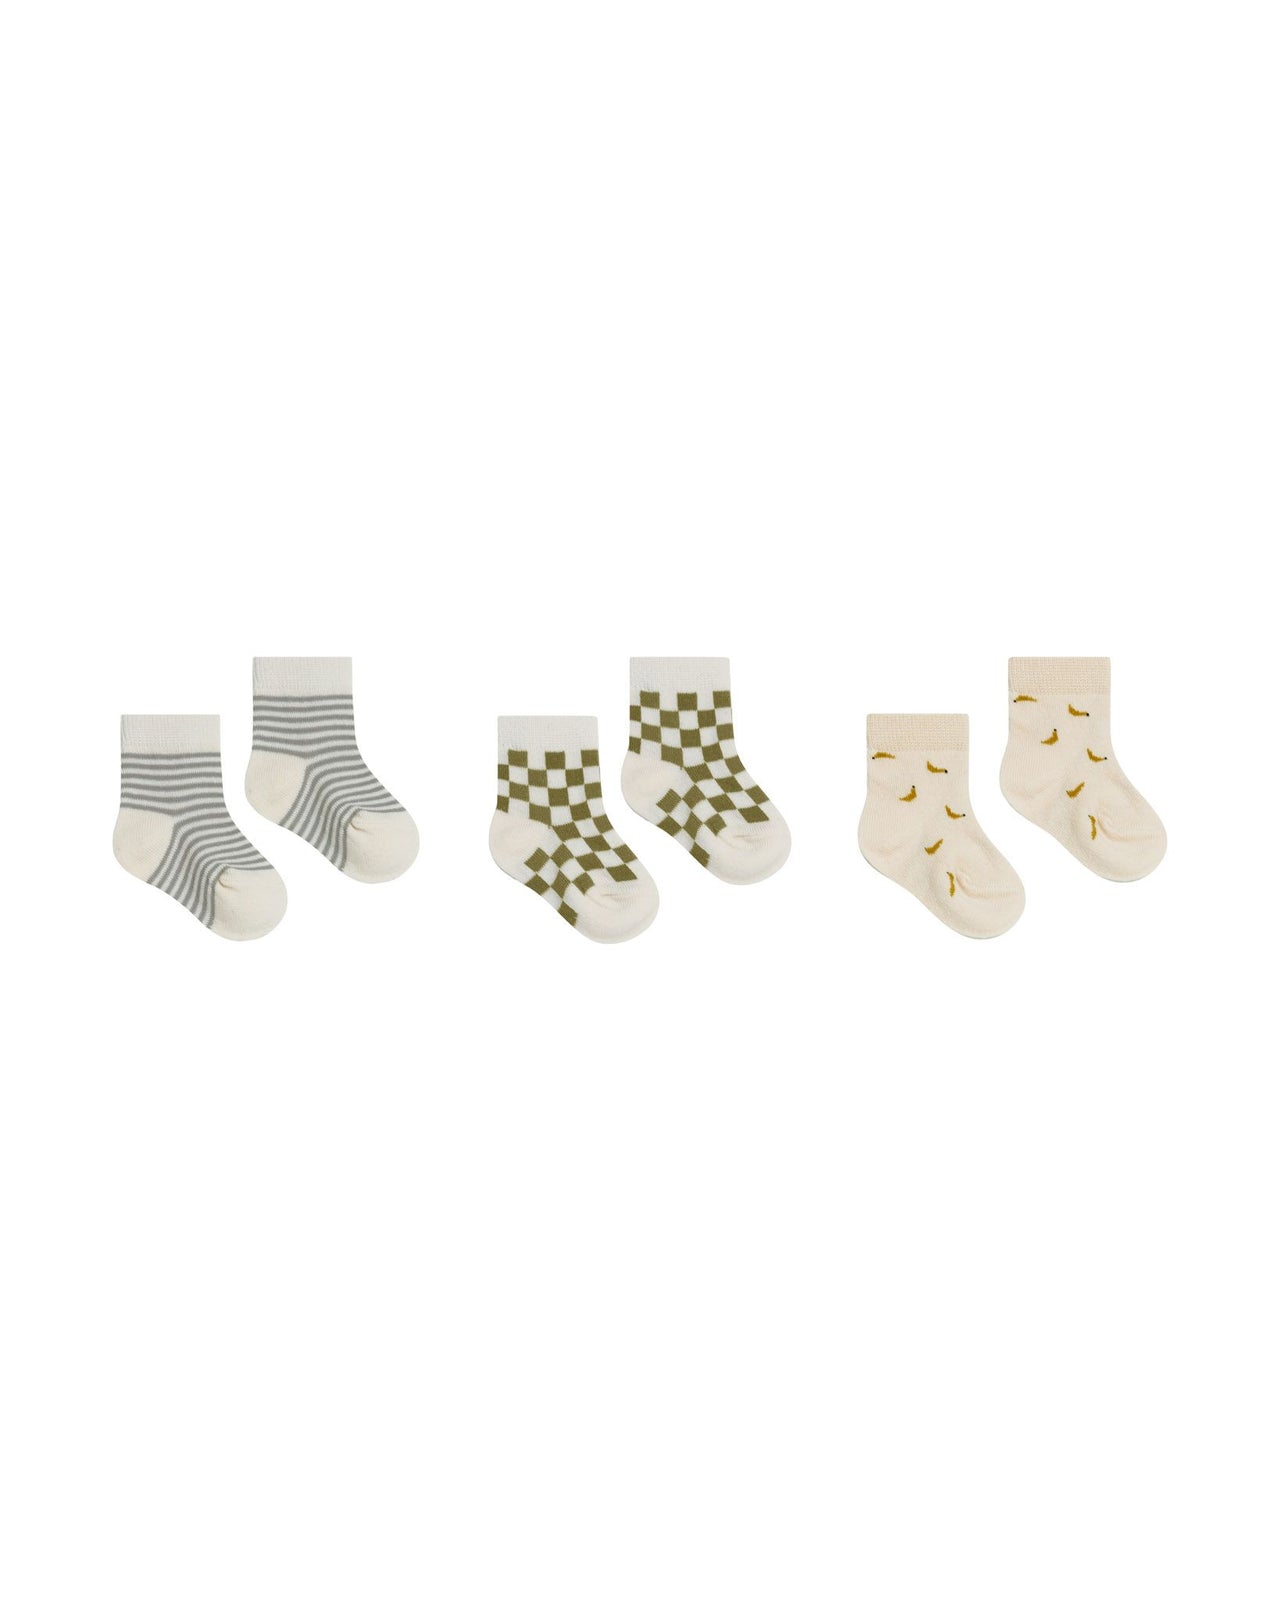 Rylee + Cru Printed Socks, Pool Stripe, Olive Check, Bananas